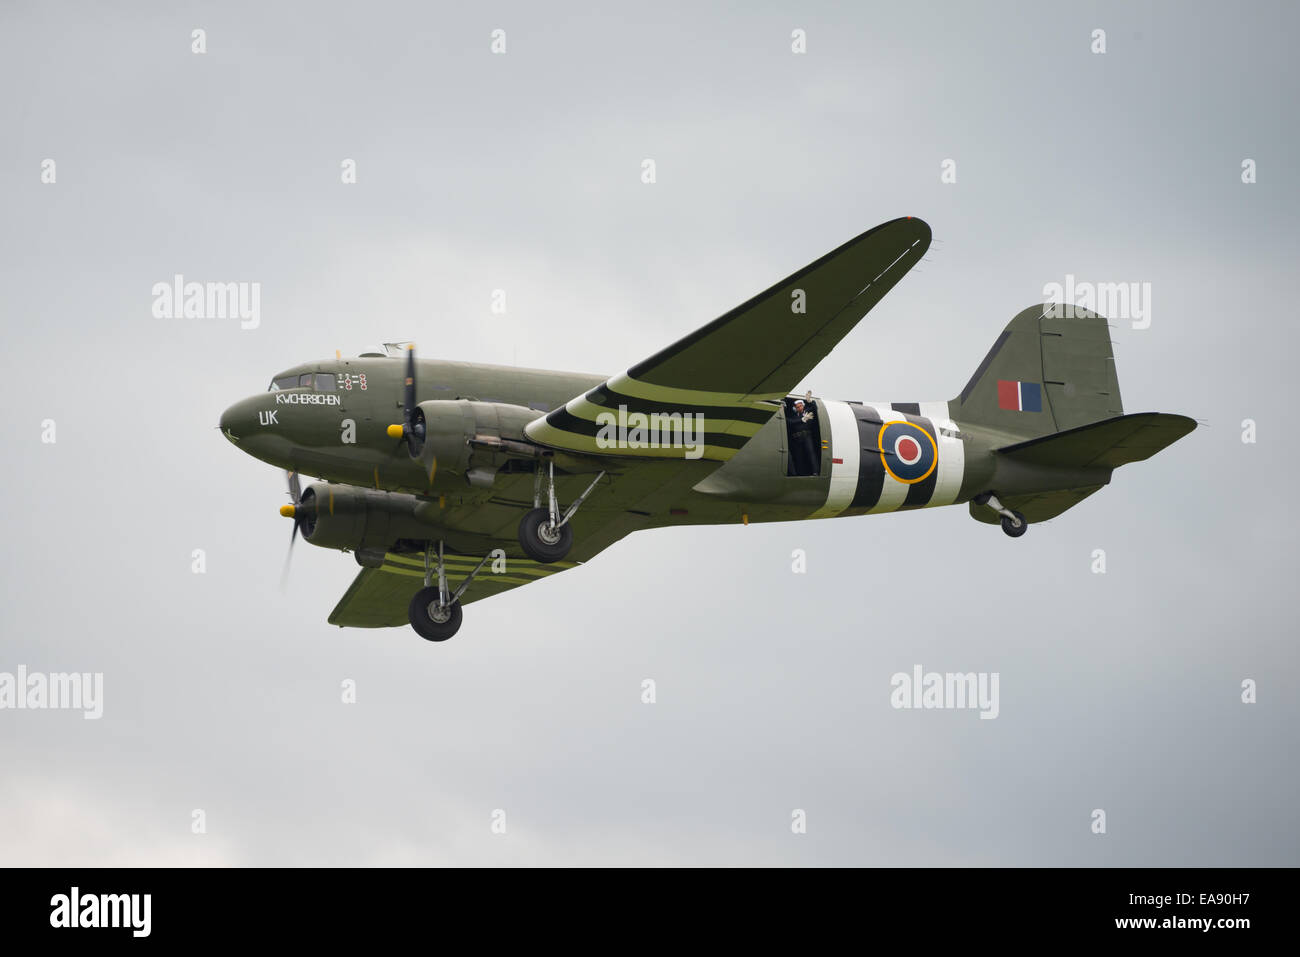 UK - Cosford, 8 juin 2014 : le Douglas DC3, l'affichage de la RAF à Cosford meeting aérien. Banque D'Images